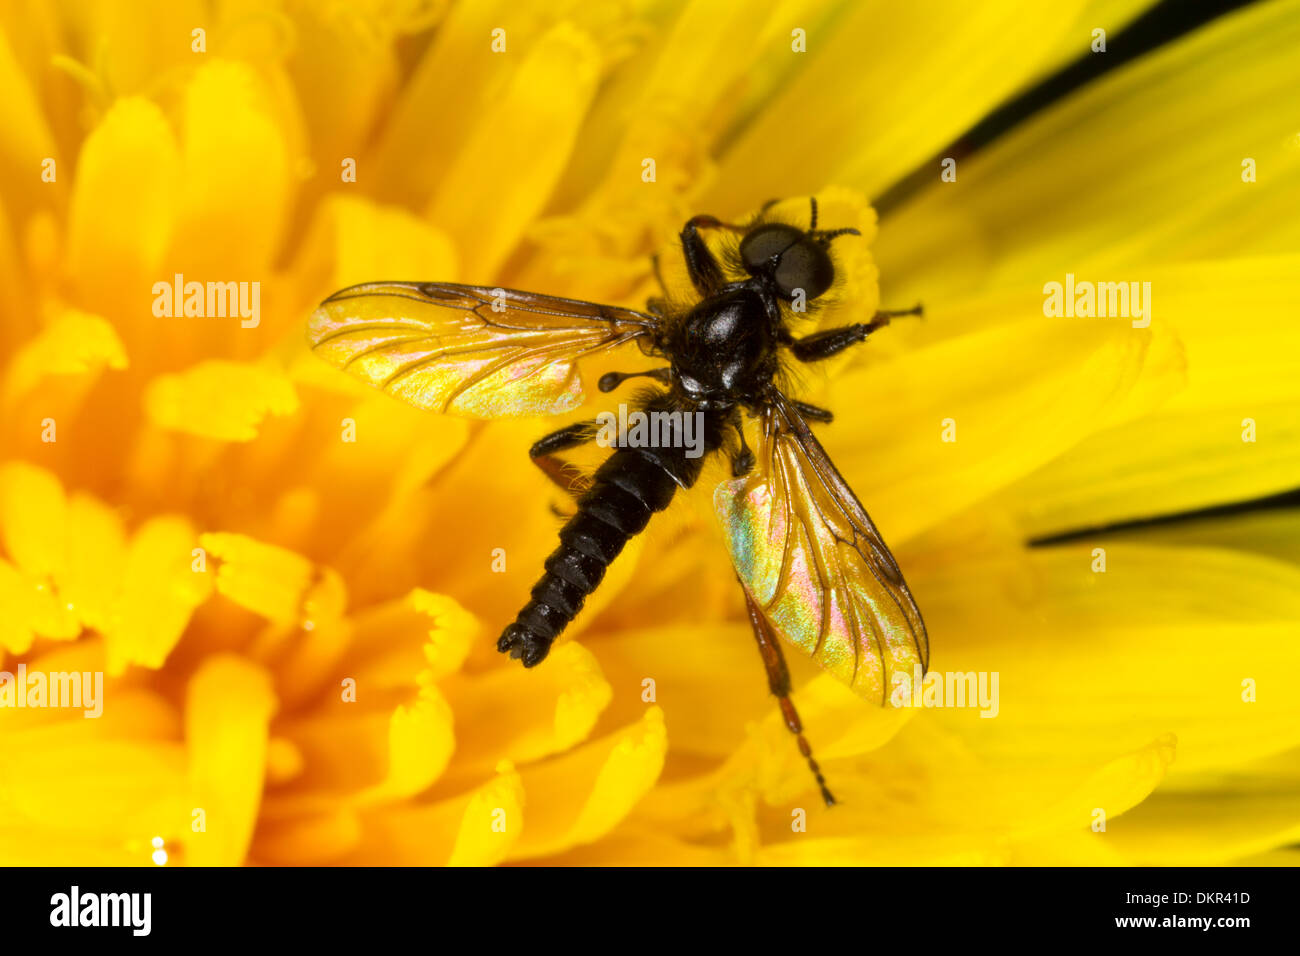 La fièvre mâle-fly (Dilophus sp.) se nourrir dans une fleur de pissenlit (Taraxacum). Powys, Pays de Galles. Mai. Banque D'Images